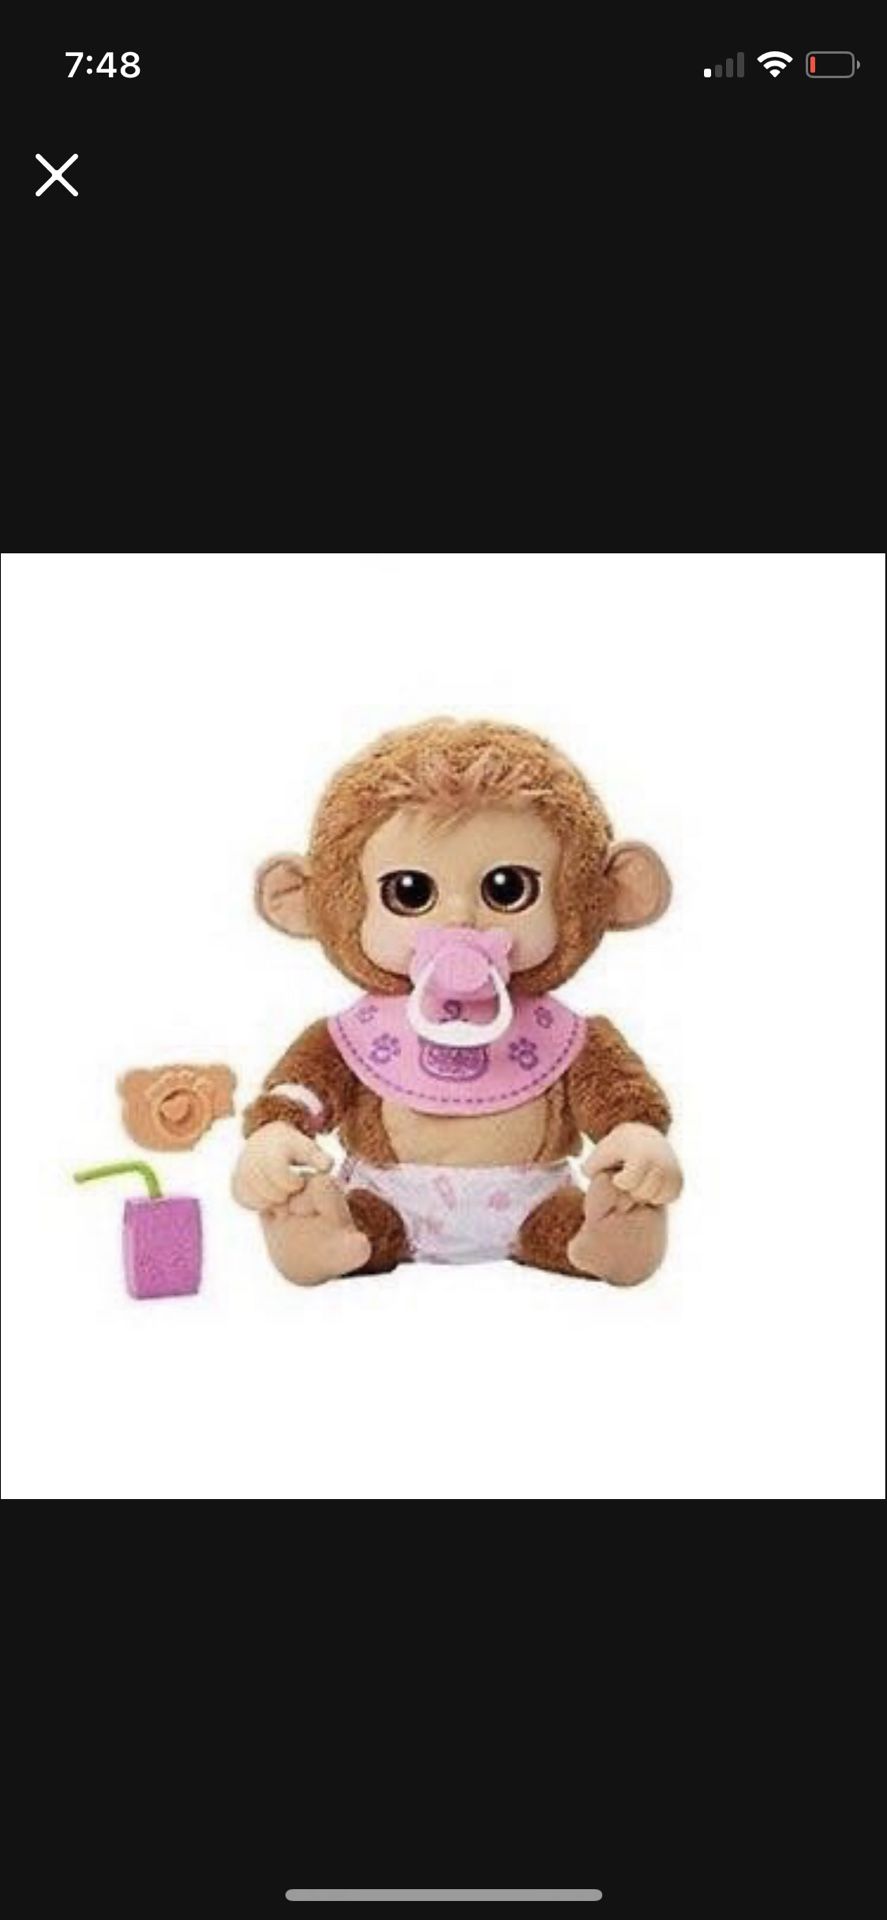 Monkey Baby Super Cute Soft  Cuddly